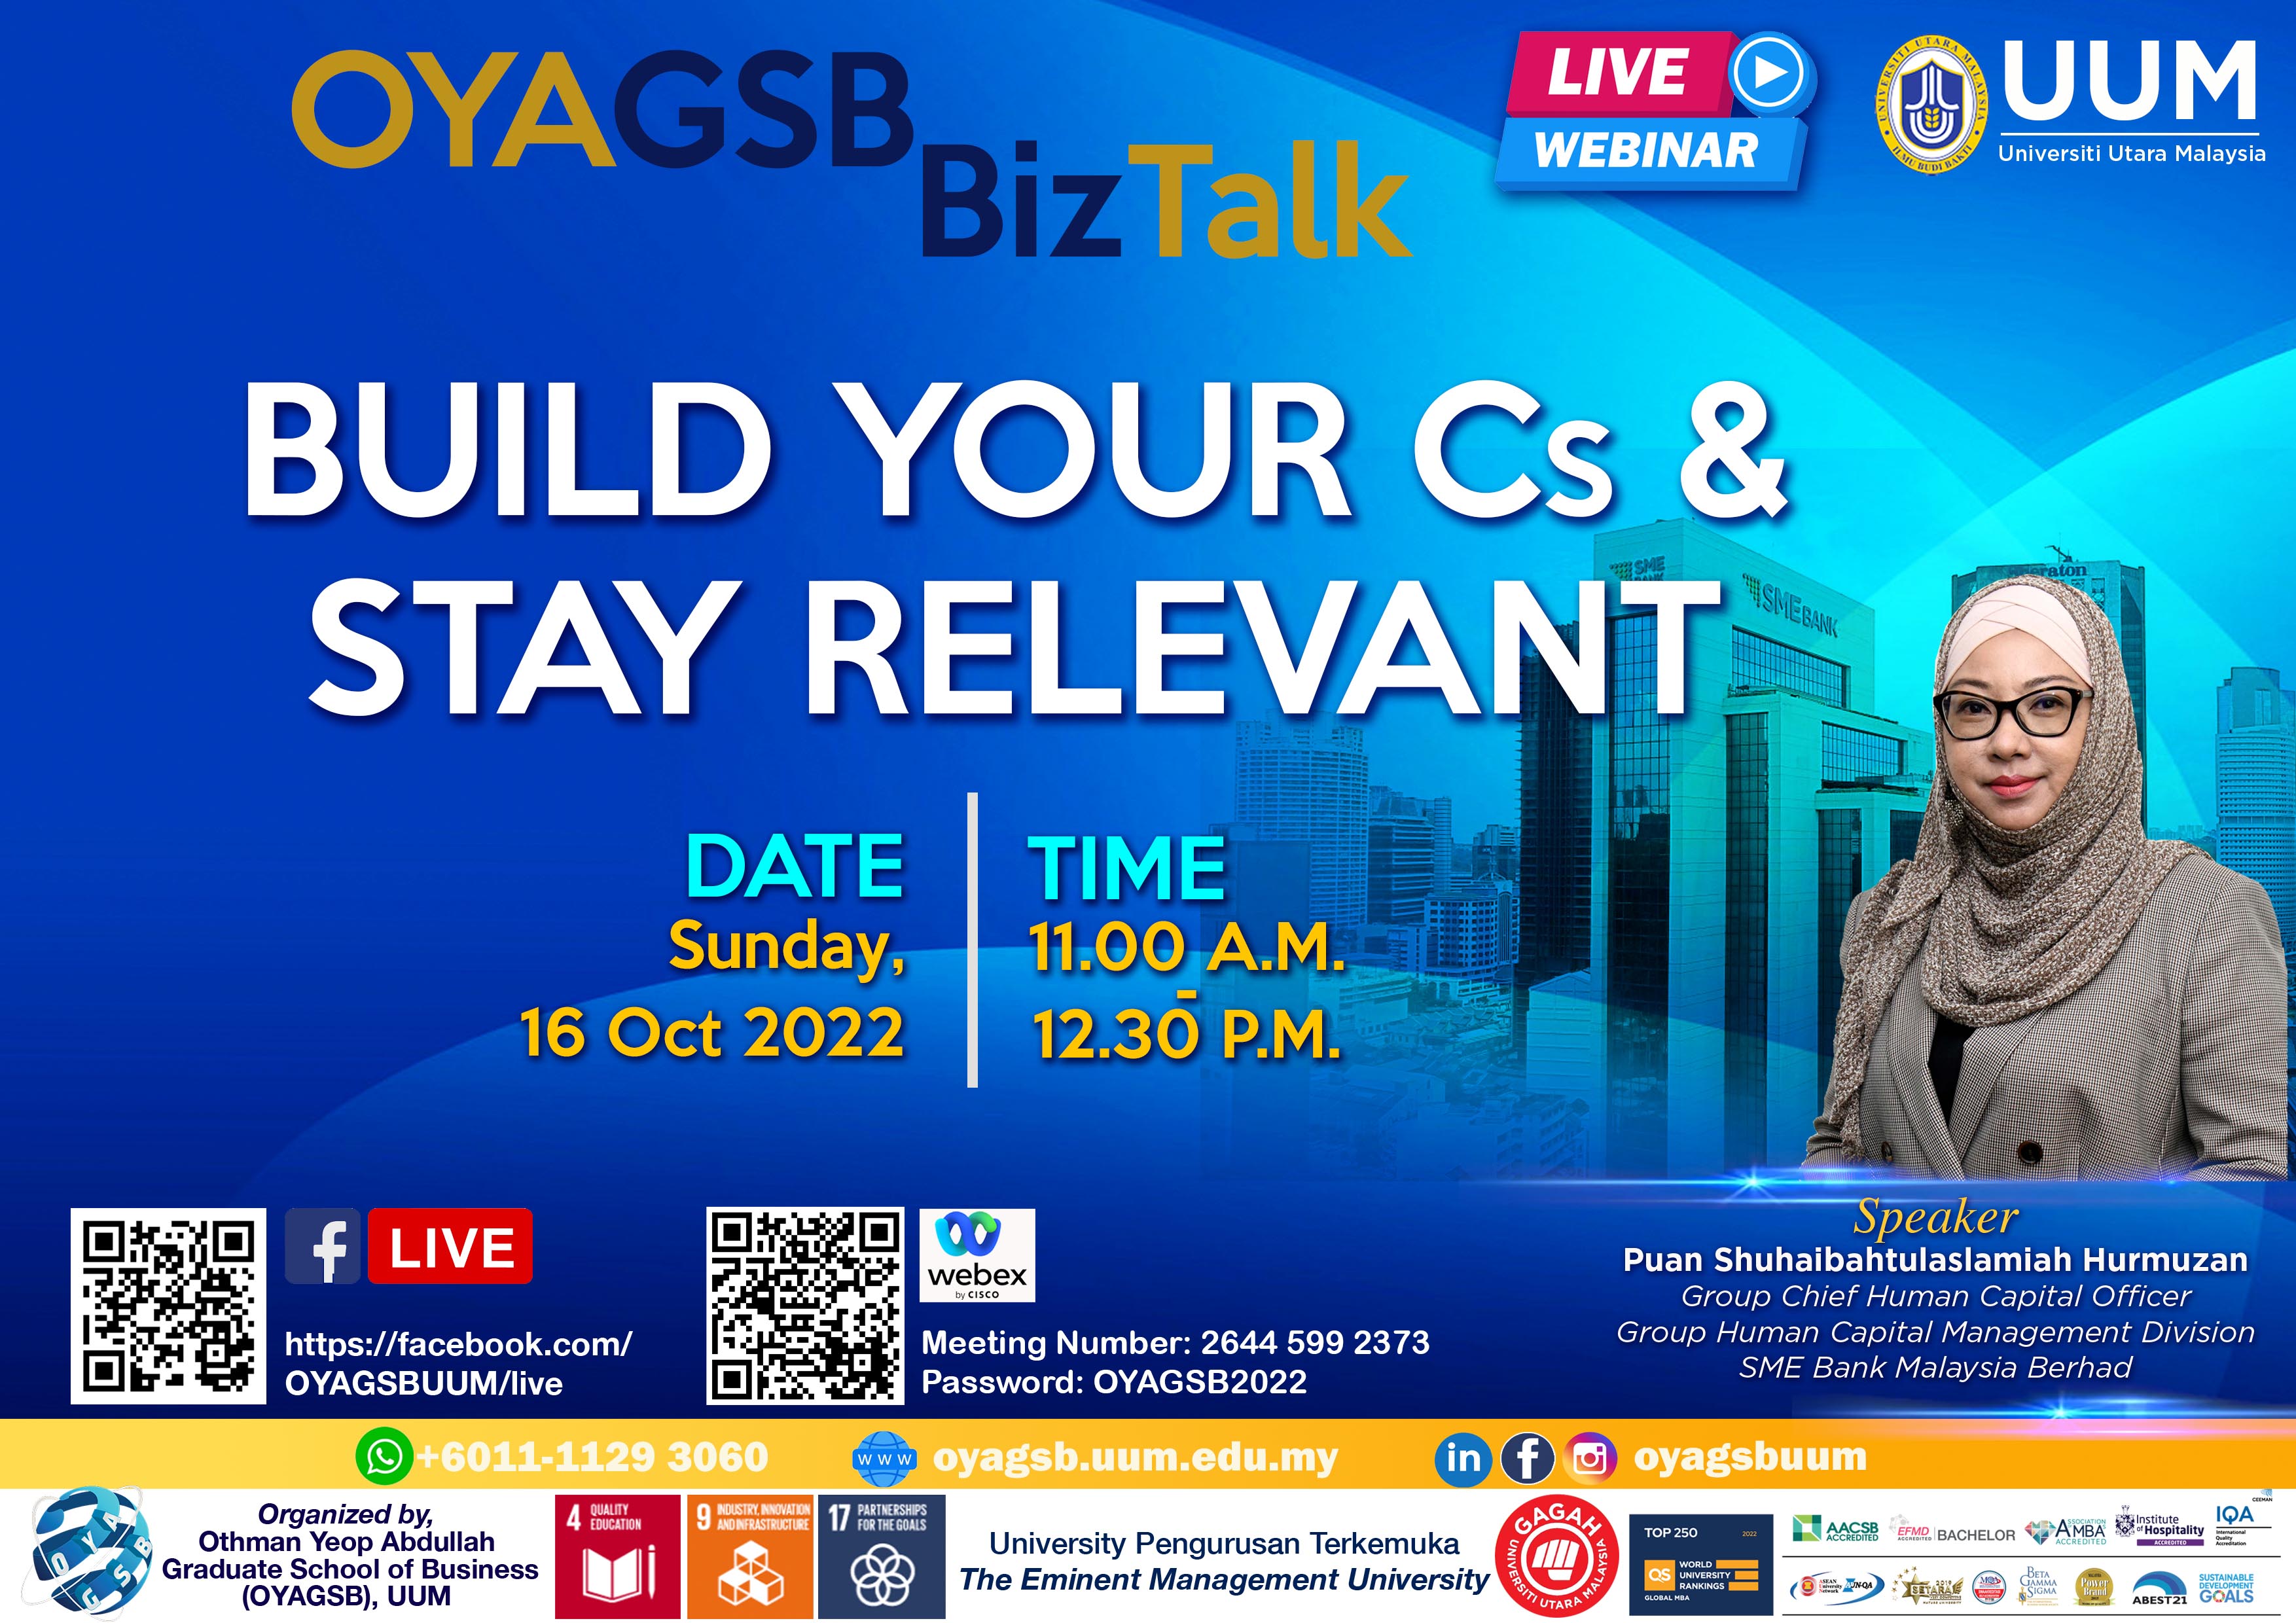 OYAGSB BizTalk: Build Your Cs & Stay Relevant